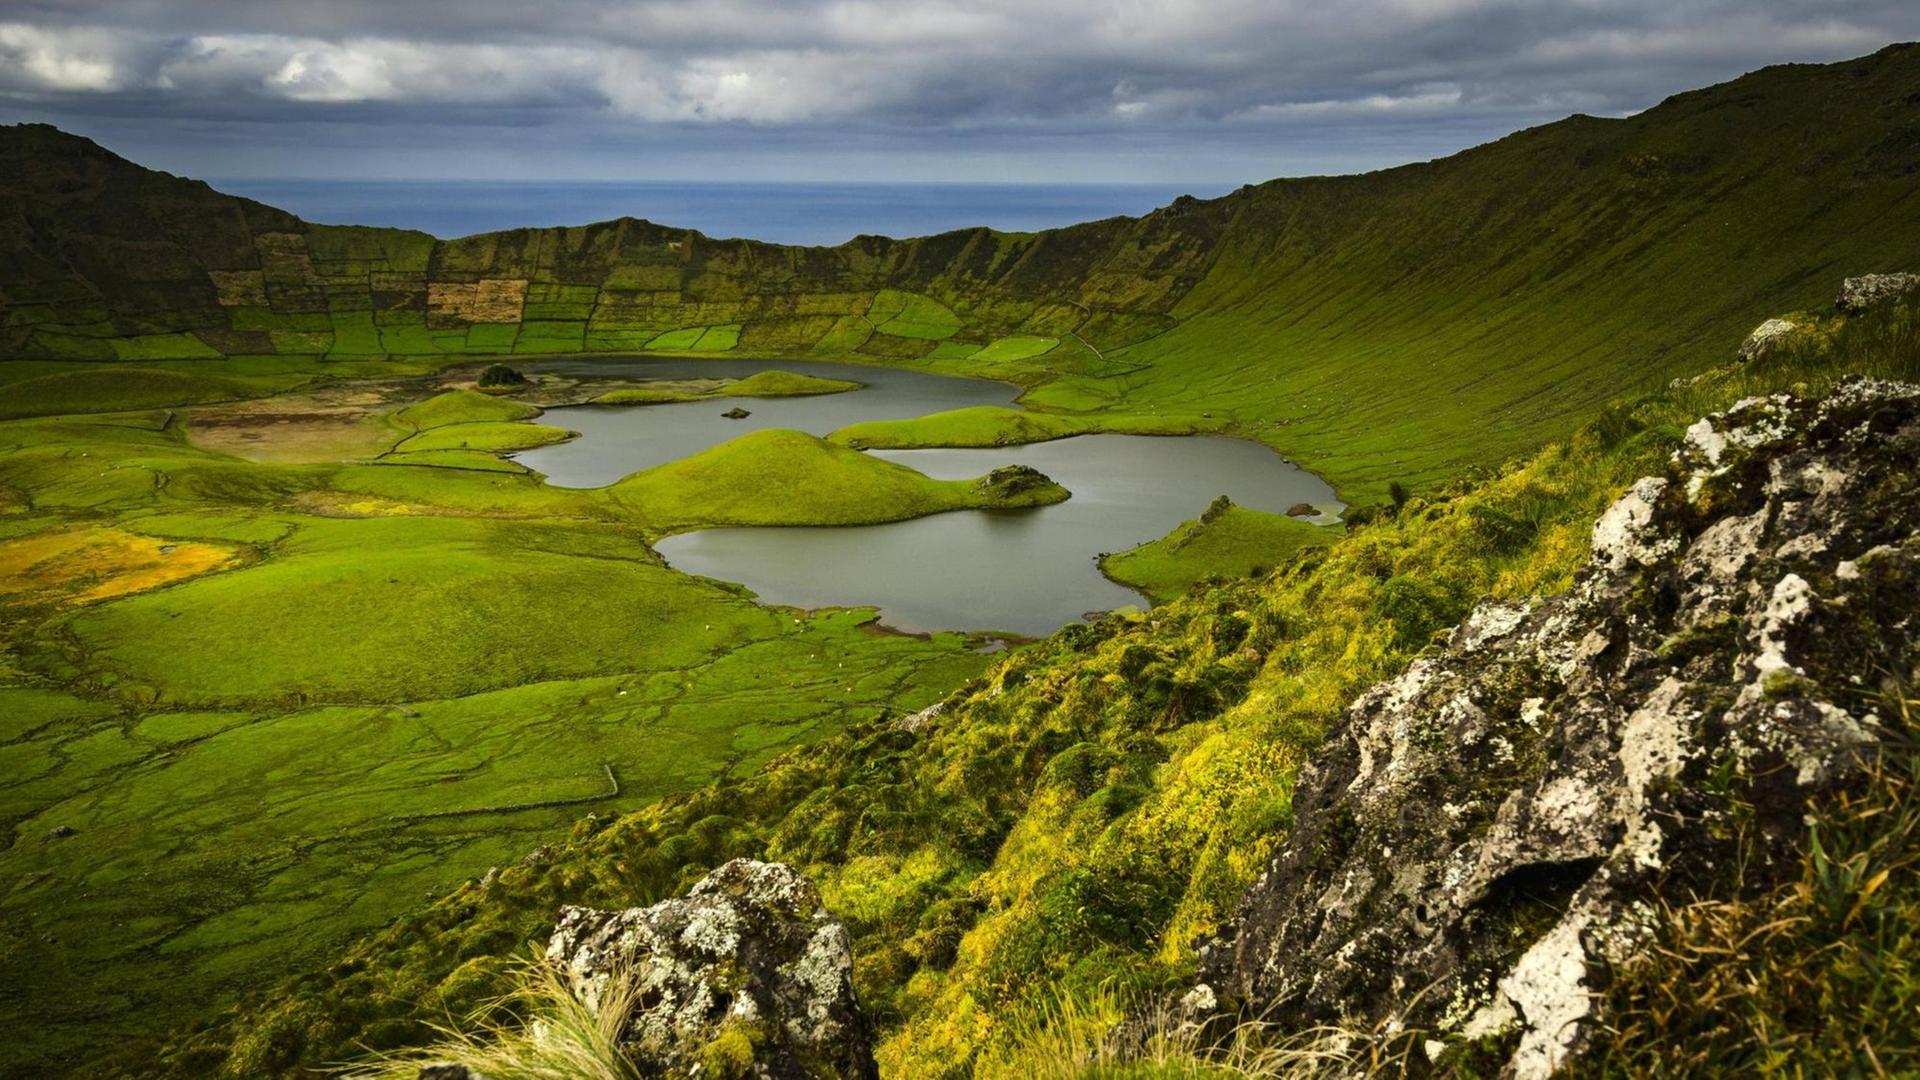 Epischer Panorama über einen grünen Vulkankrater, in dessen Mitte sich ein See befindet